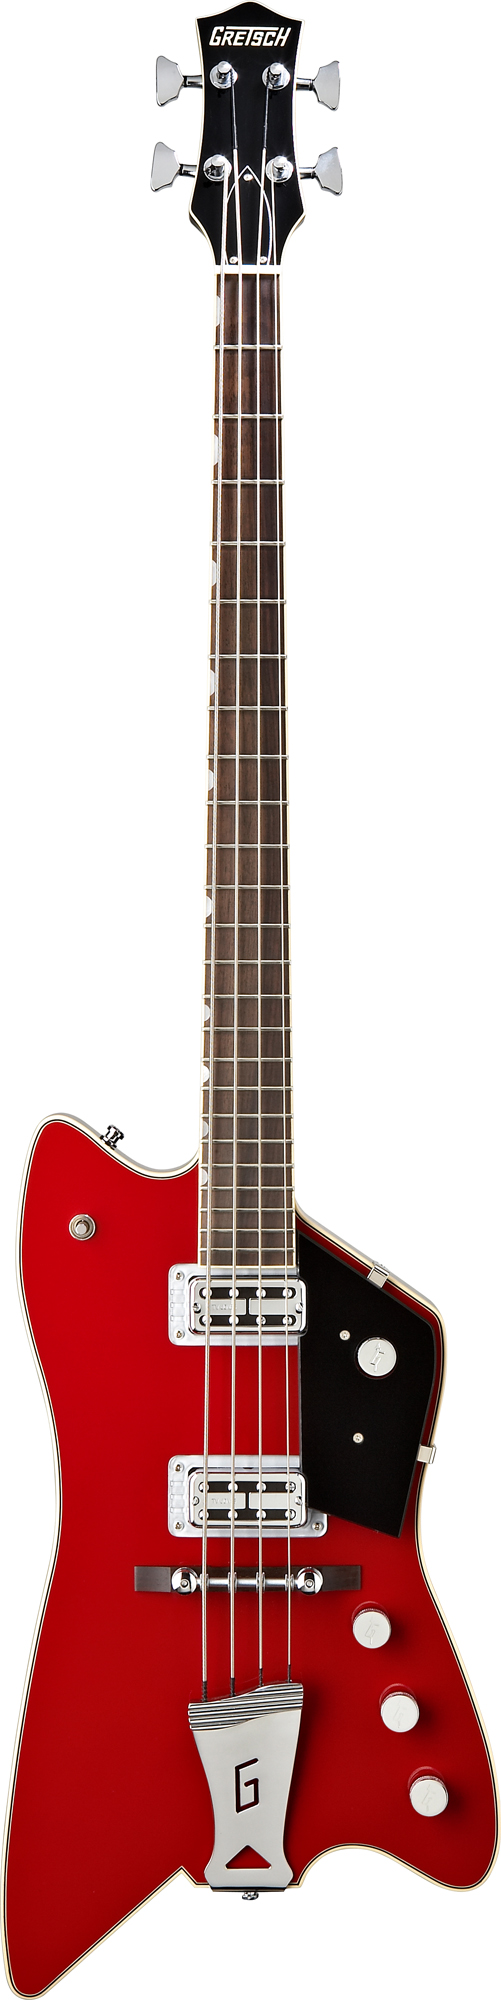 G6199B Billy Bo Jupiter Thunderbird Bass